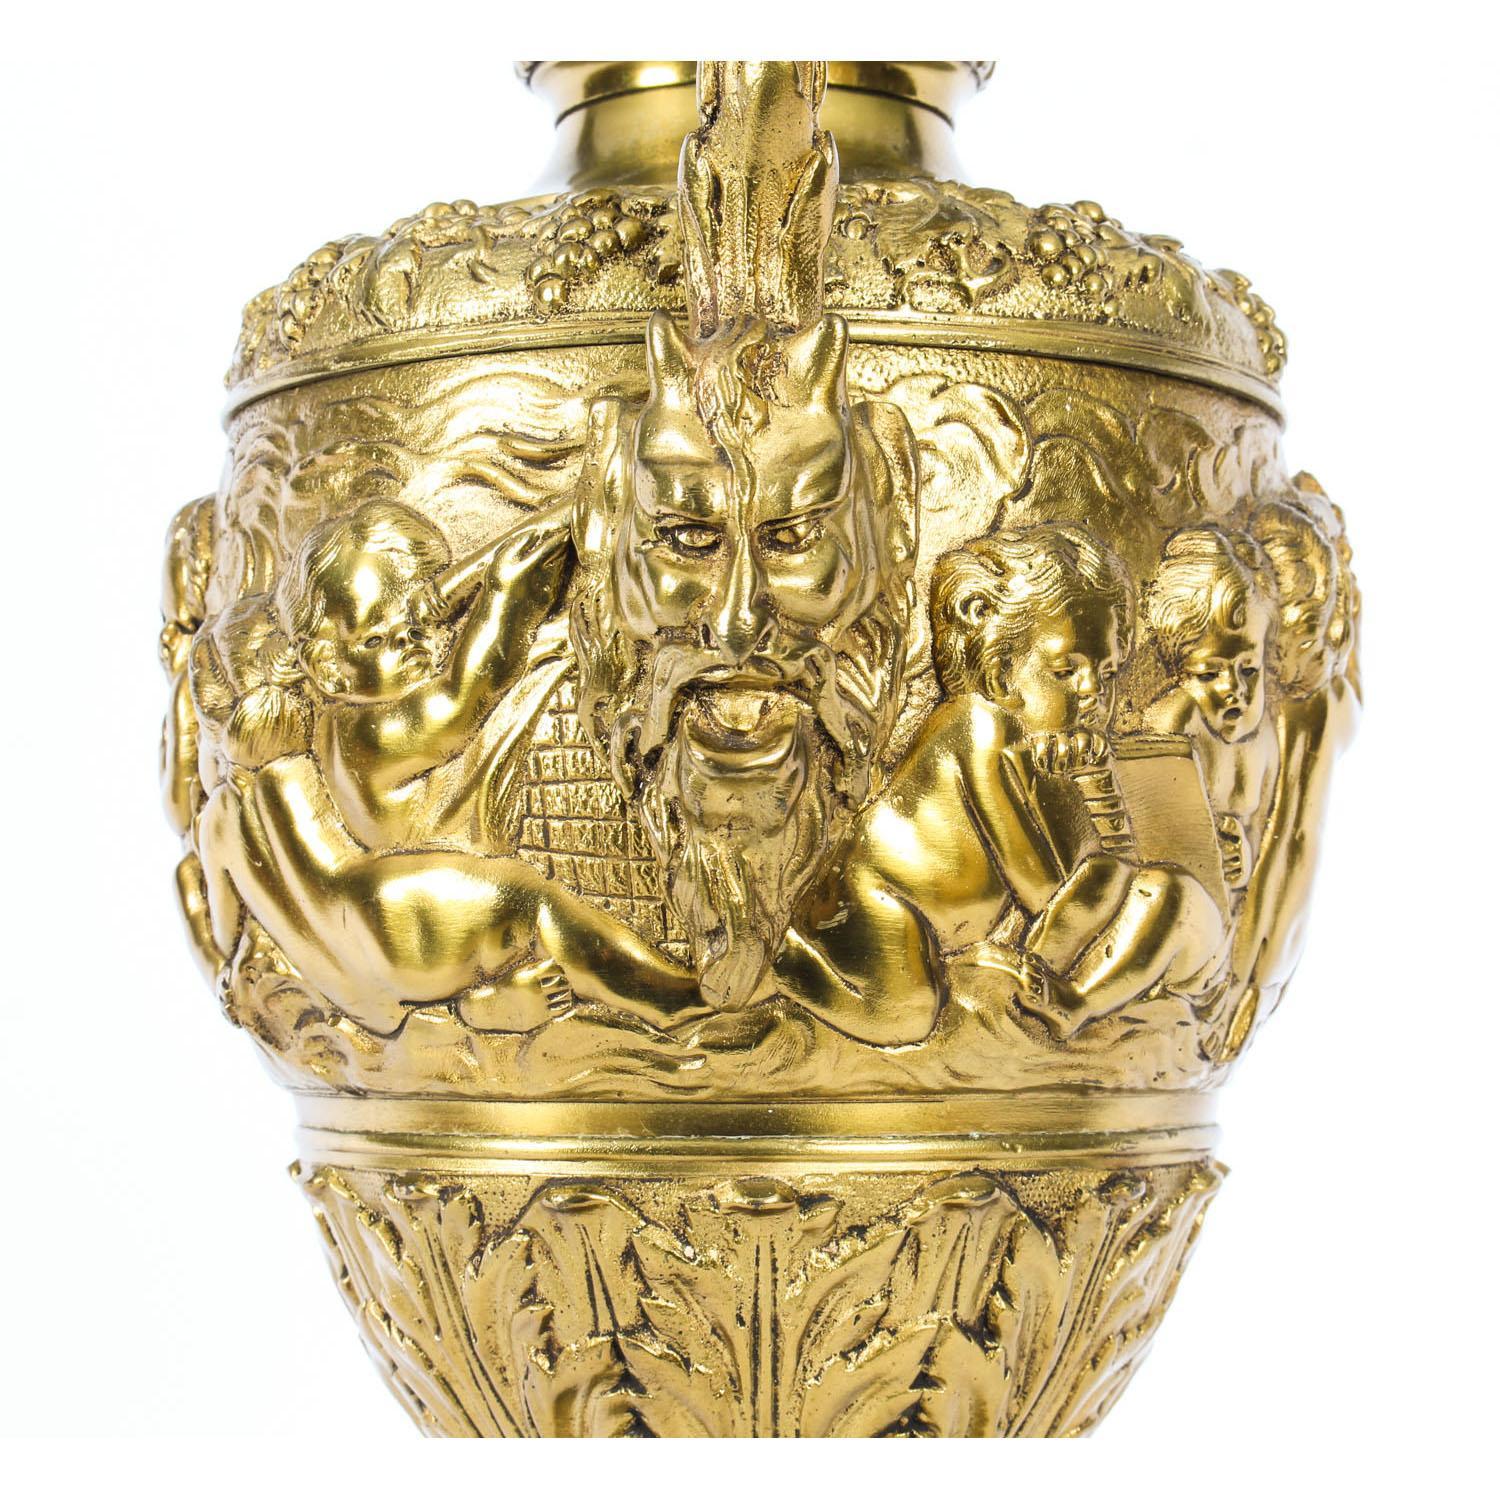 Antique Gilt Bronze Renaissance Revival Table Lamp, 19th Century For Sale 2